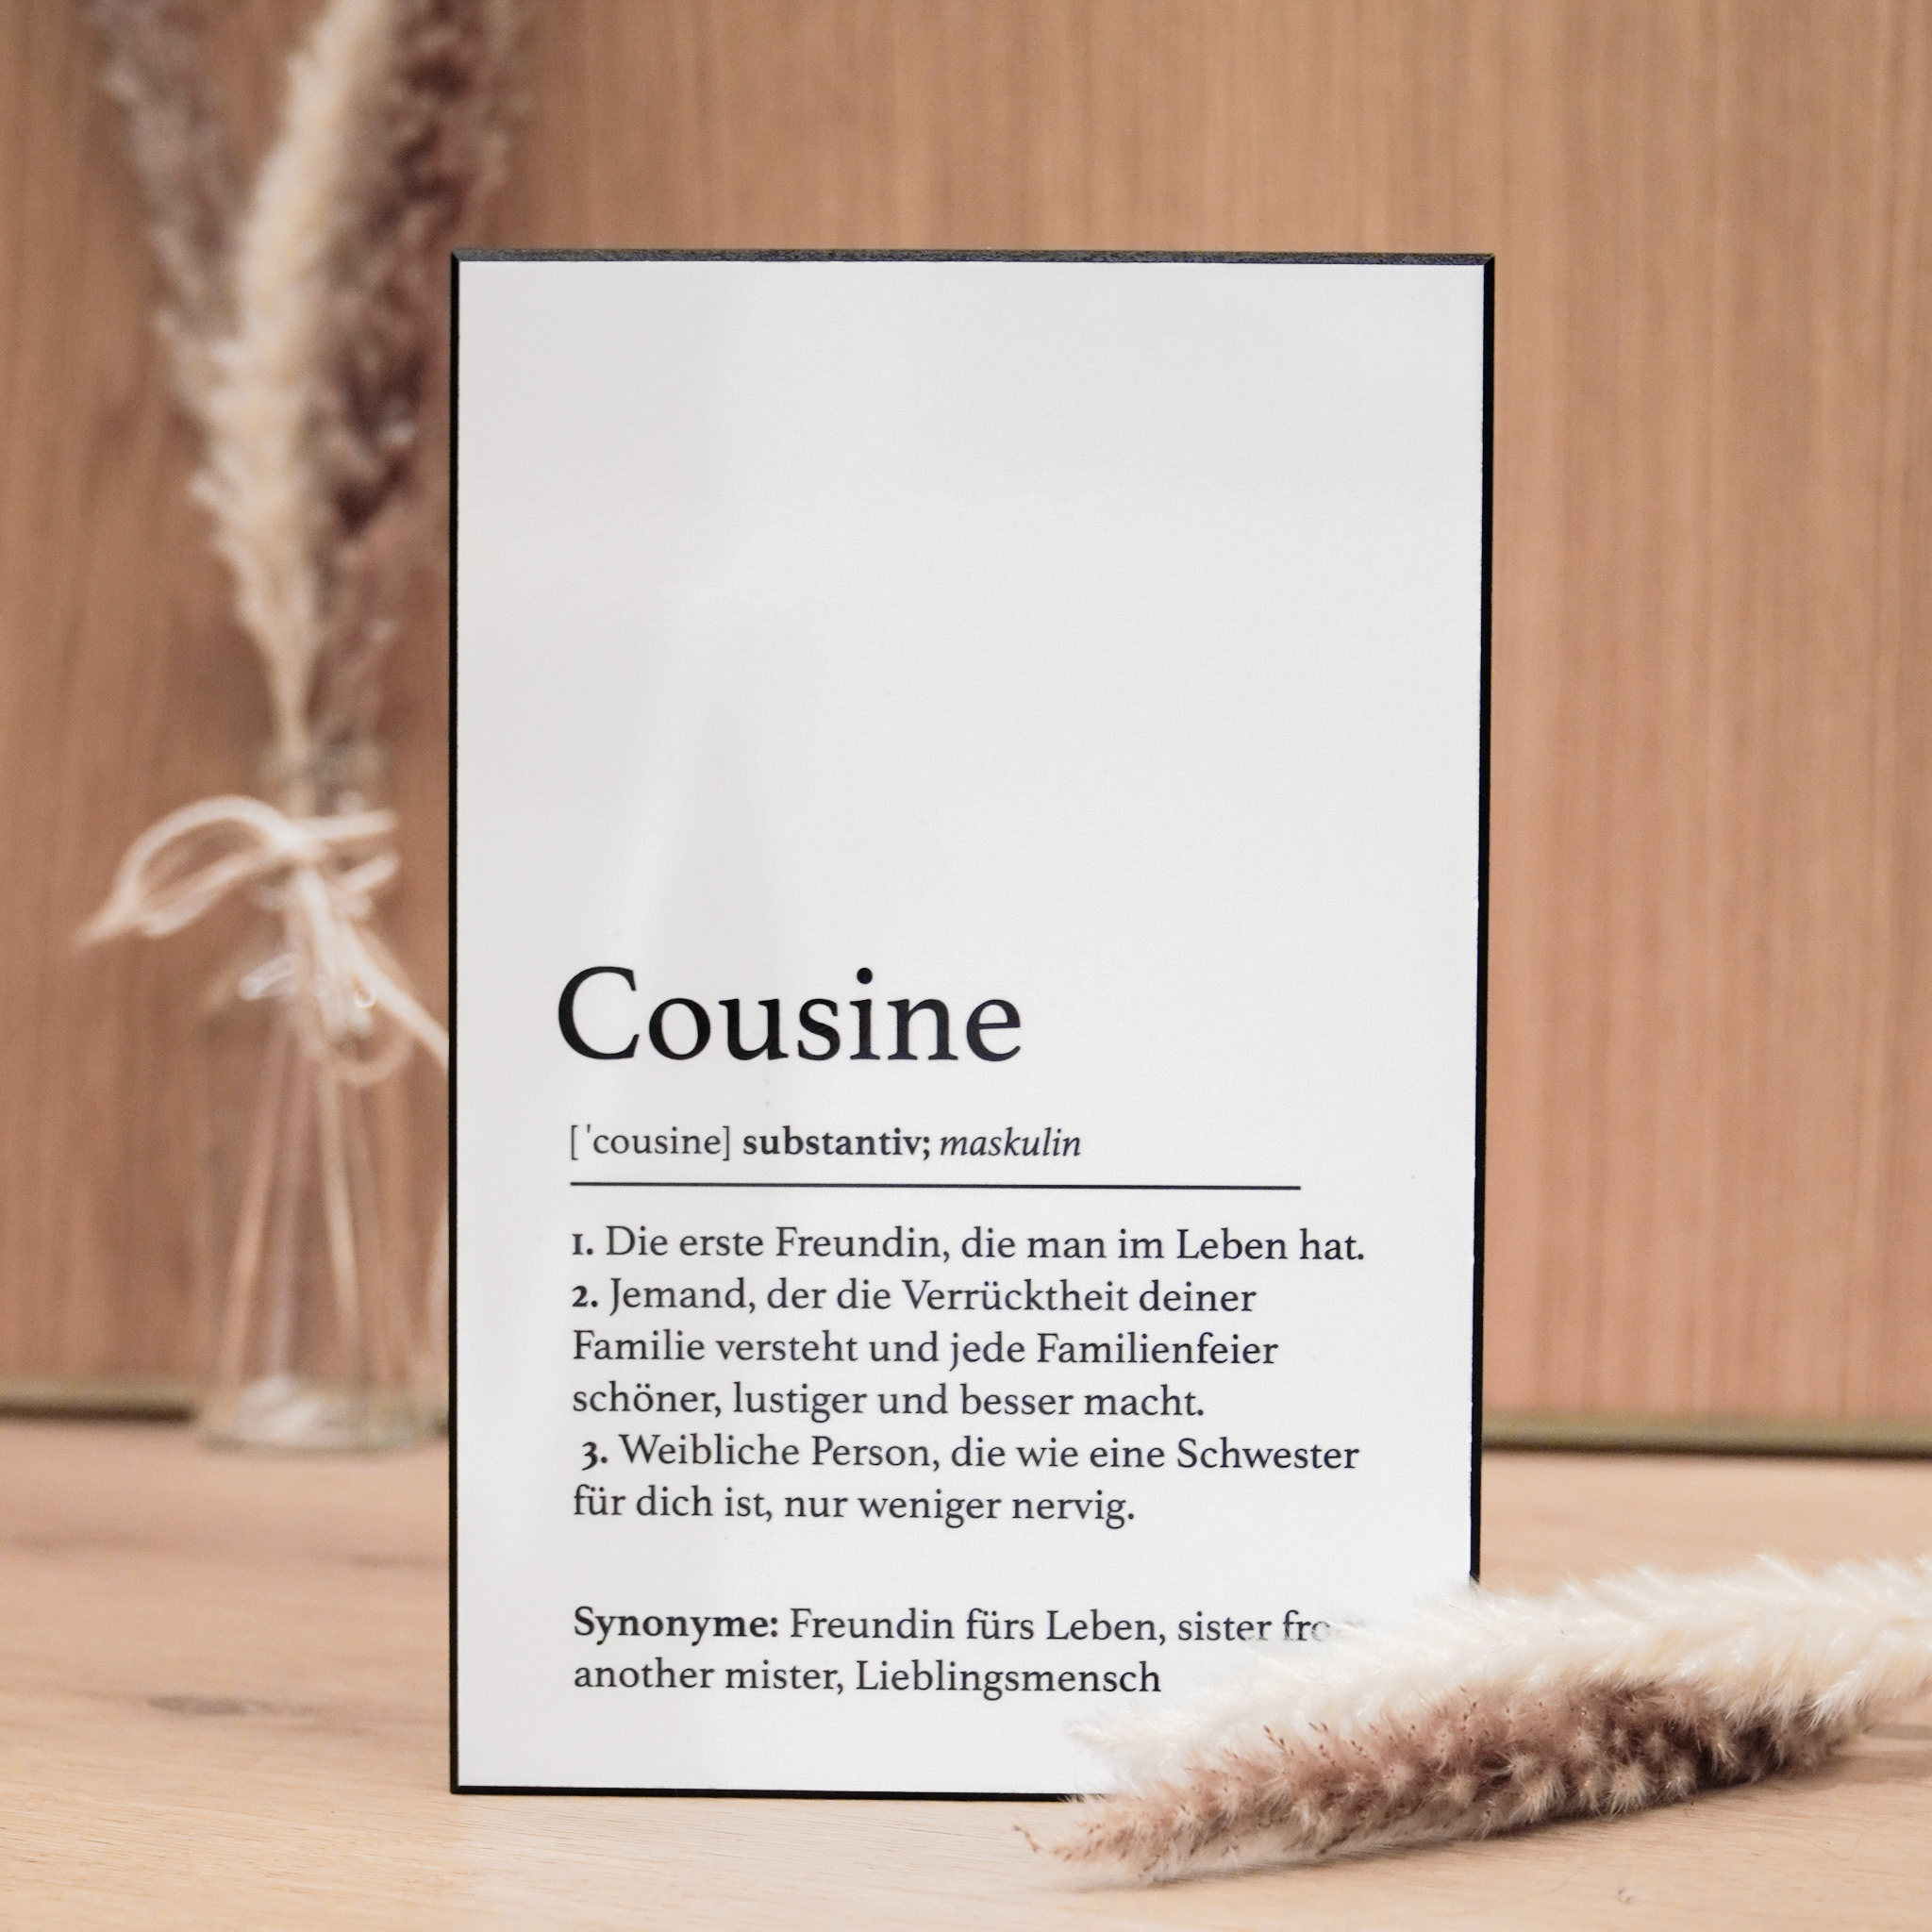 Definitionstafel „Cousine“ aus erstklassigem Material – das ideale Geschenk für eine ganz besondere Frau in deinem Leben.